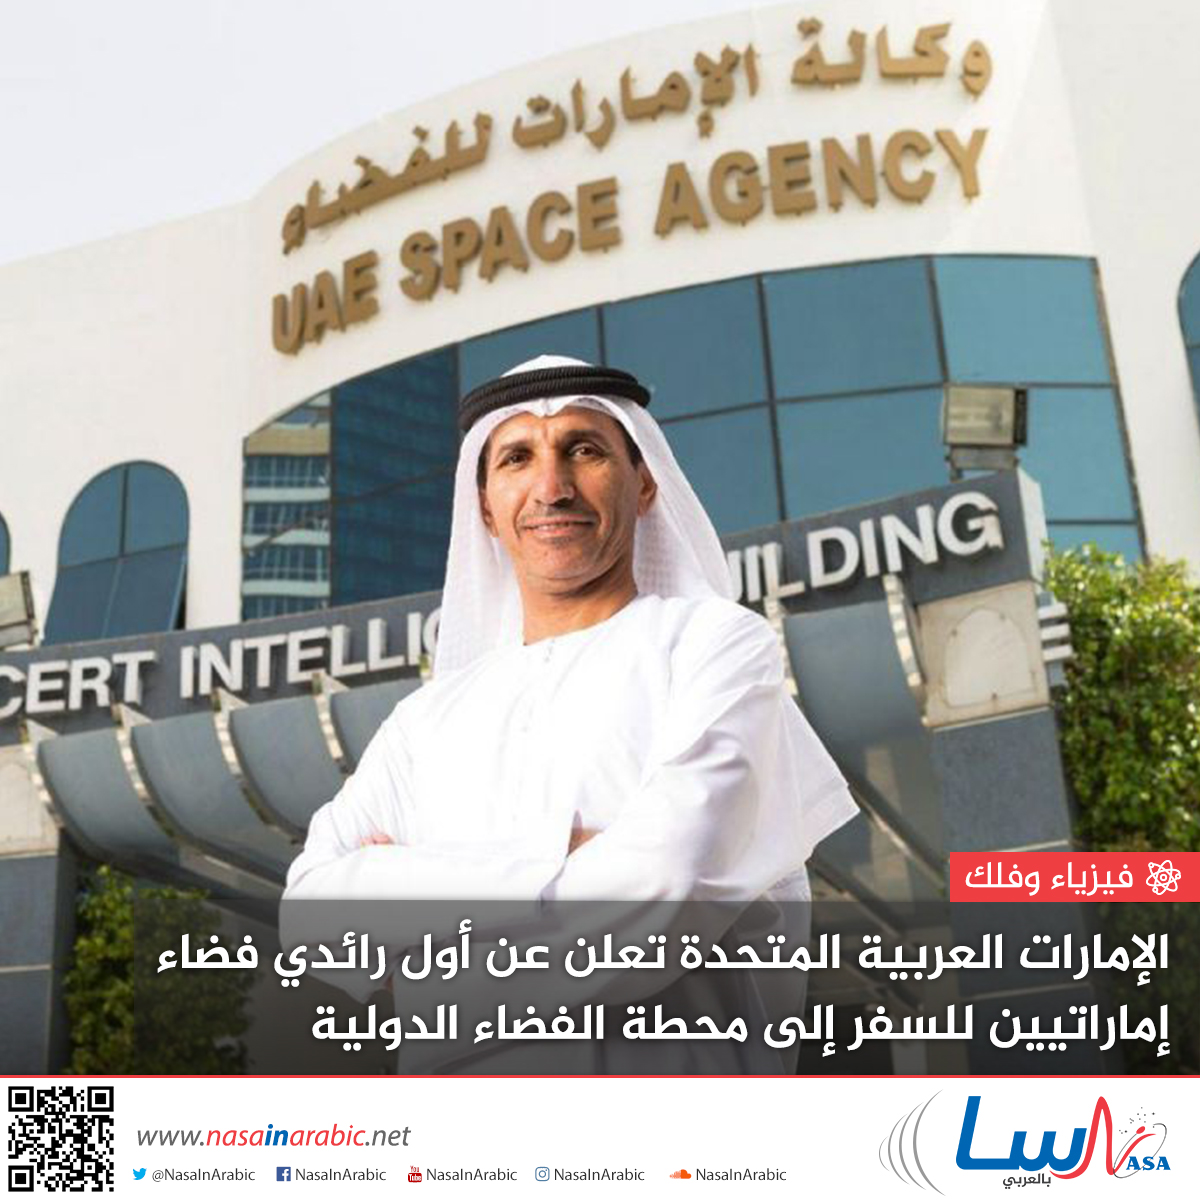 الإمارات العربية المتحدة تعلن عن أول رائدي فضاء إماراتيين للسفر إلى محطة الفضاء الدولية